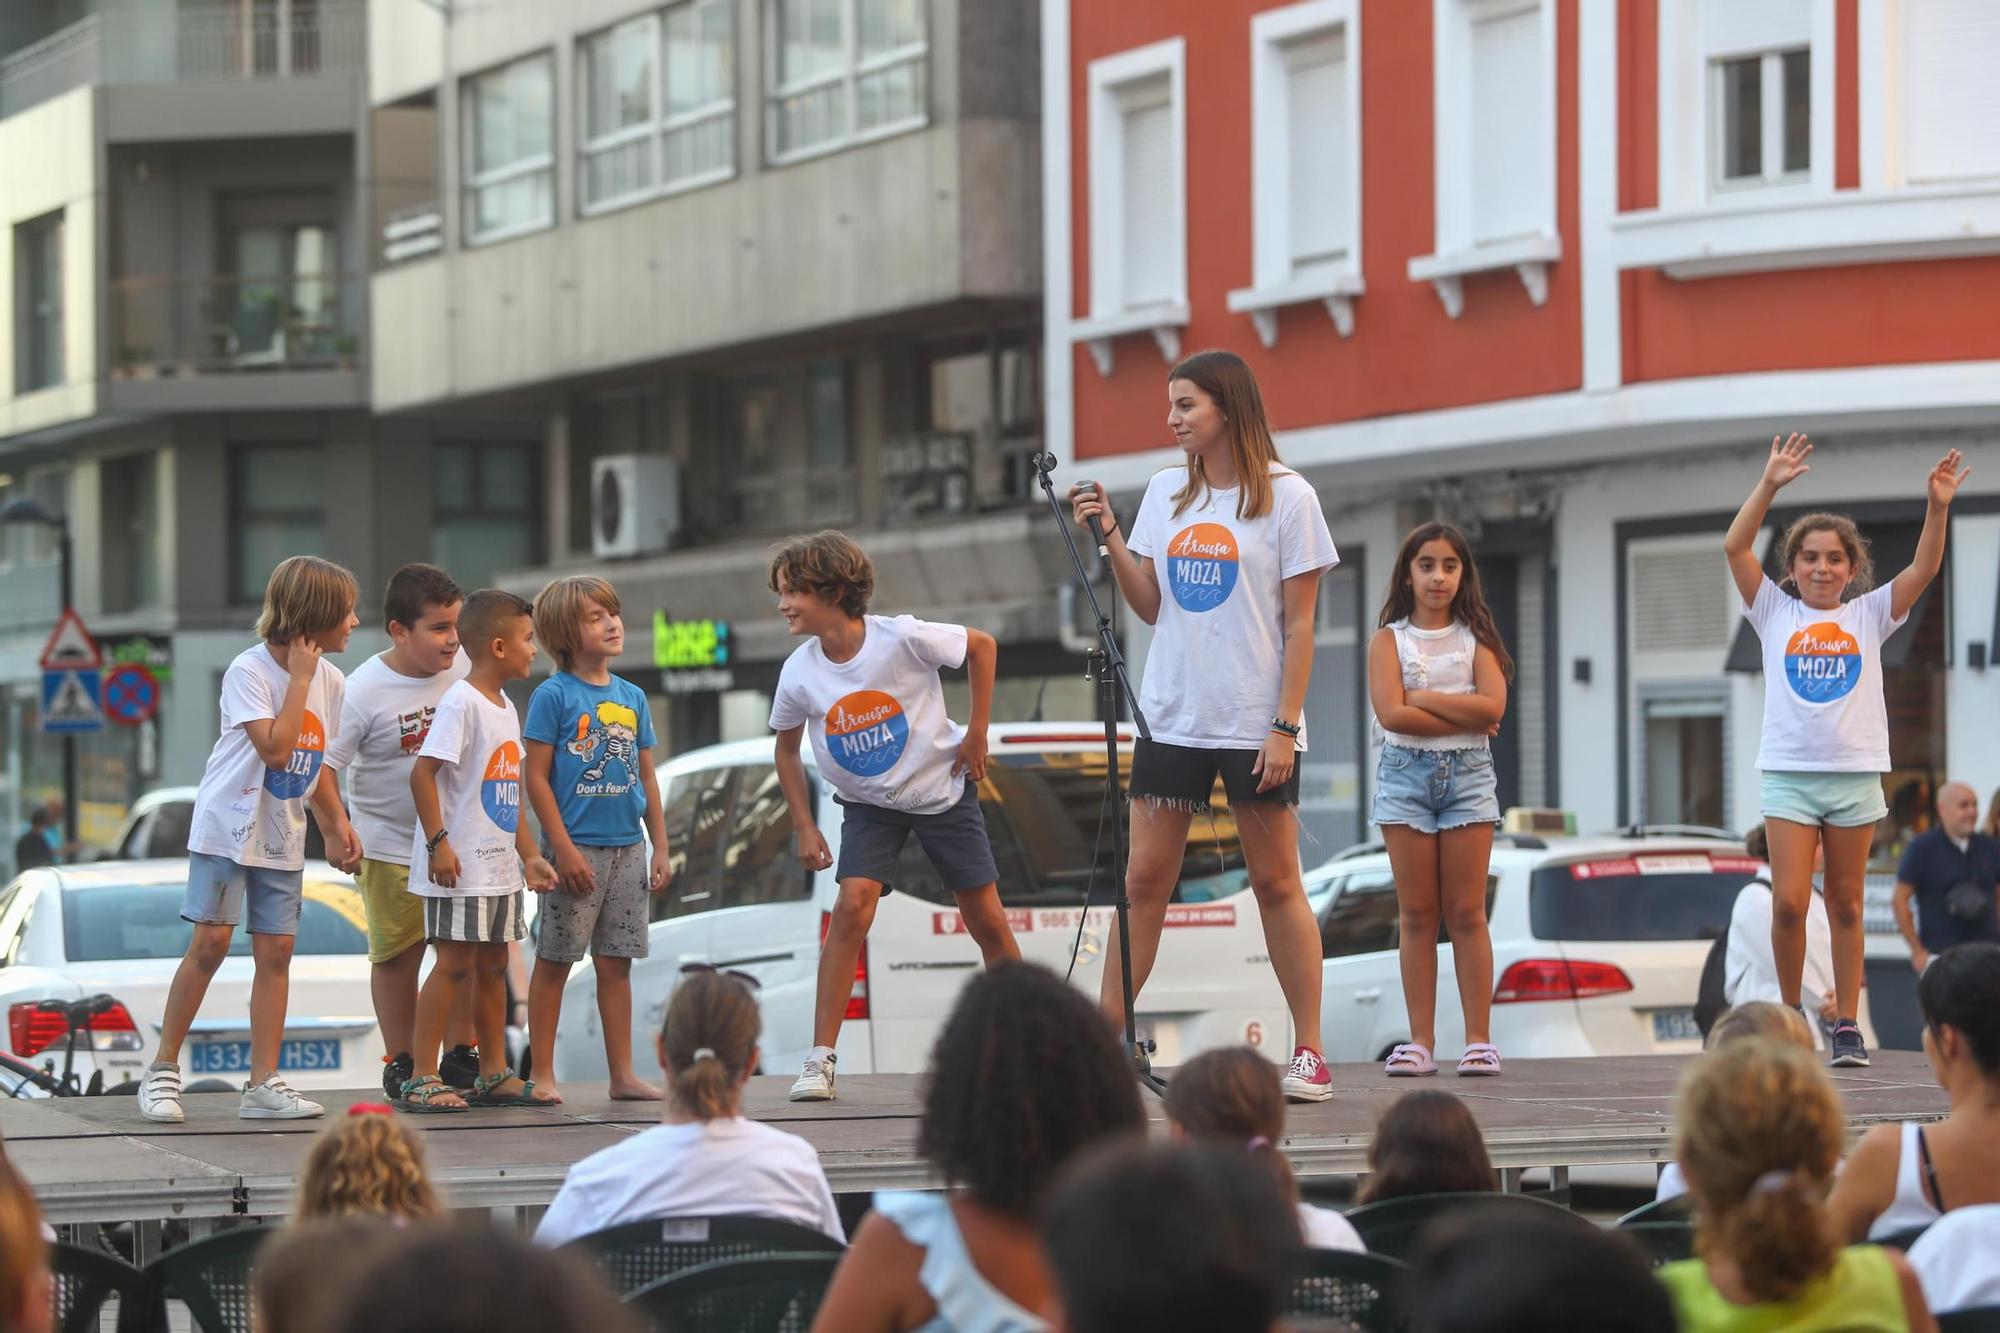 Mozos de Arousa, protagonistas en Vilagarcía